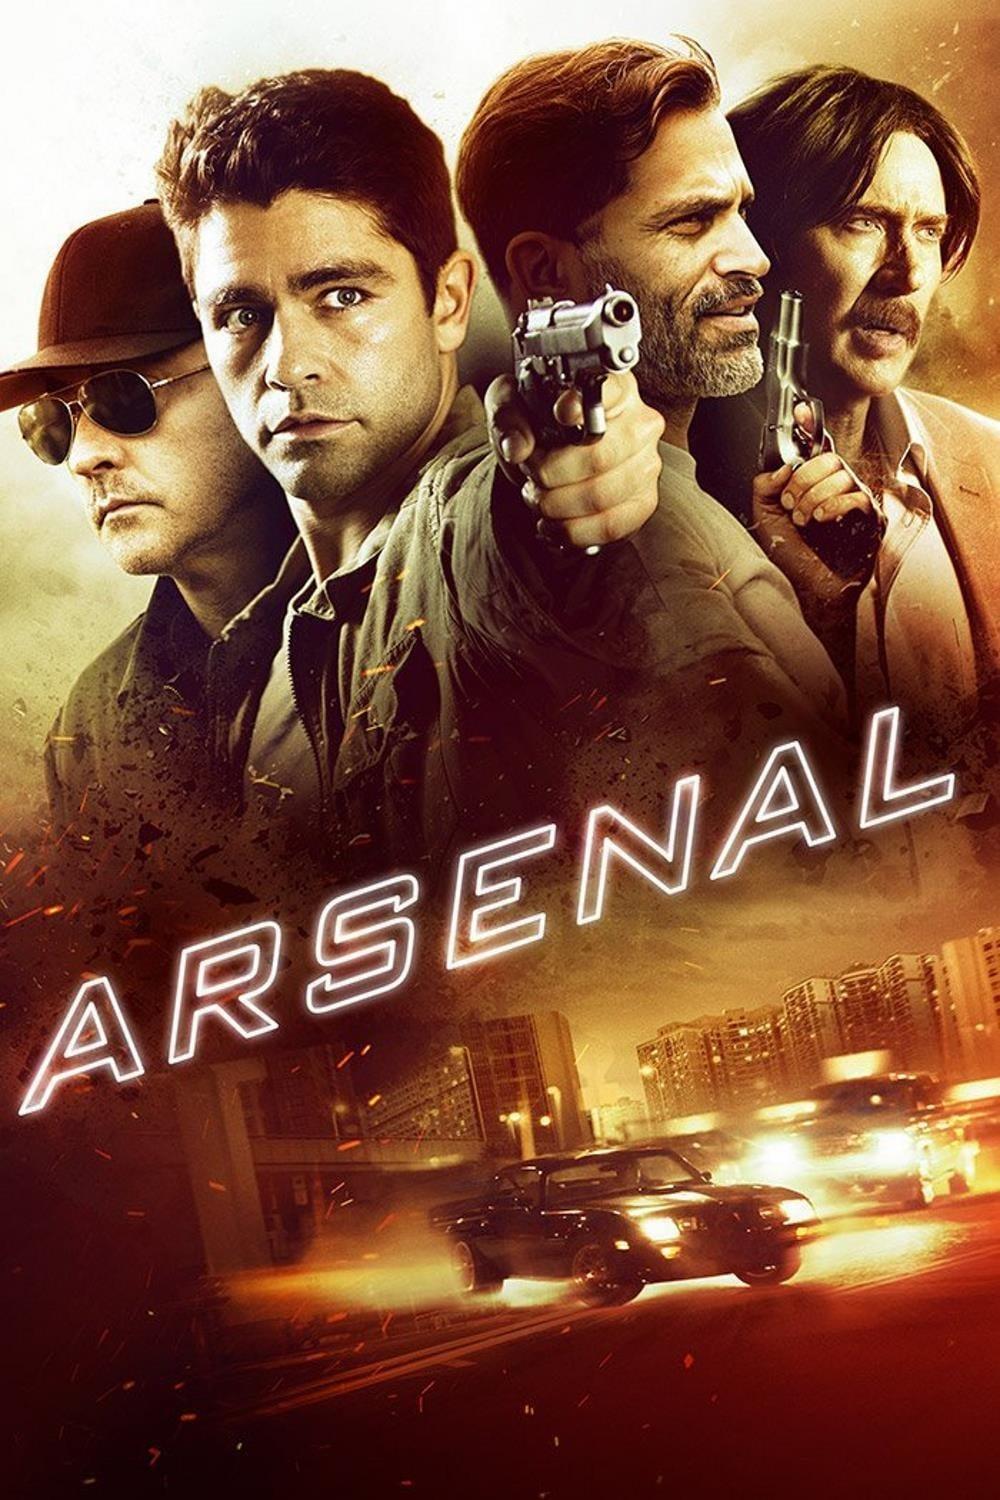 Arsenal poster